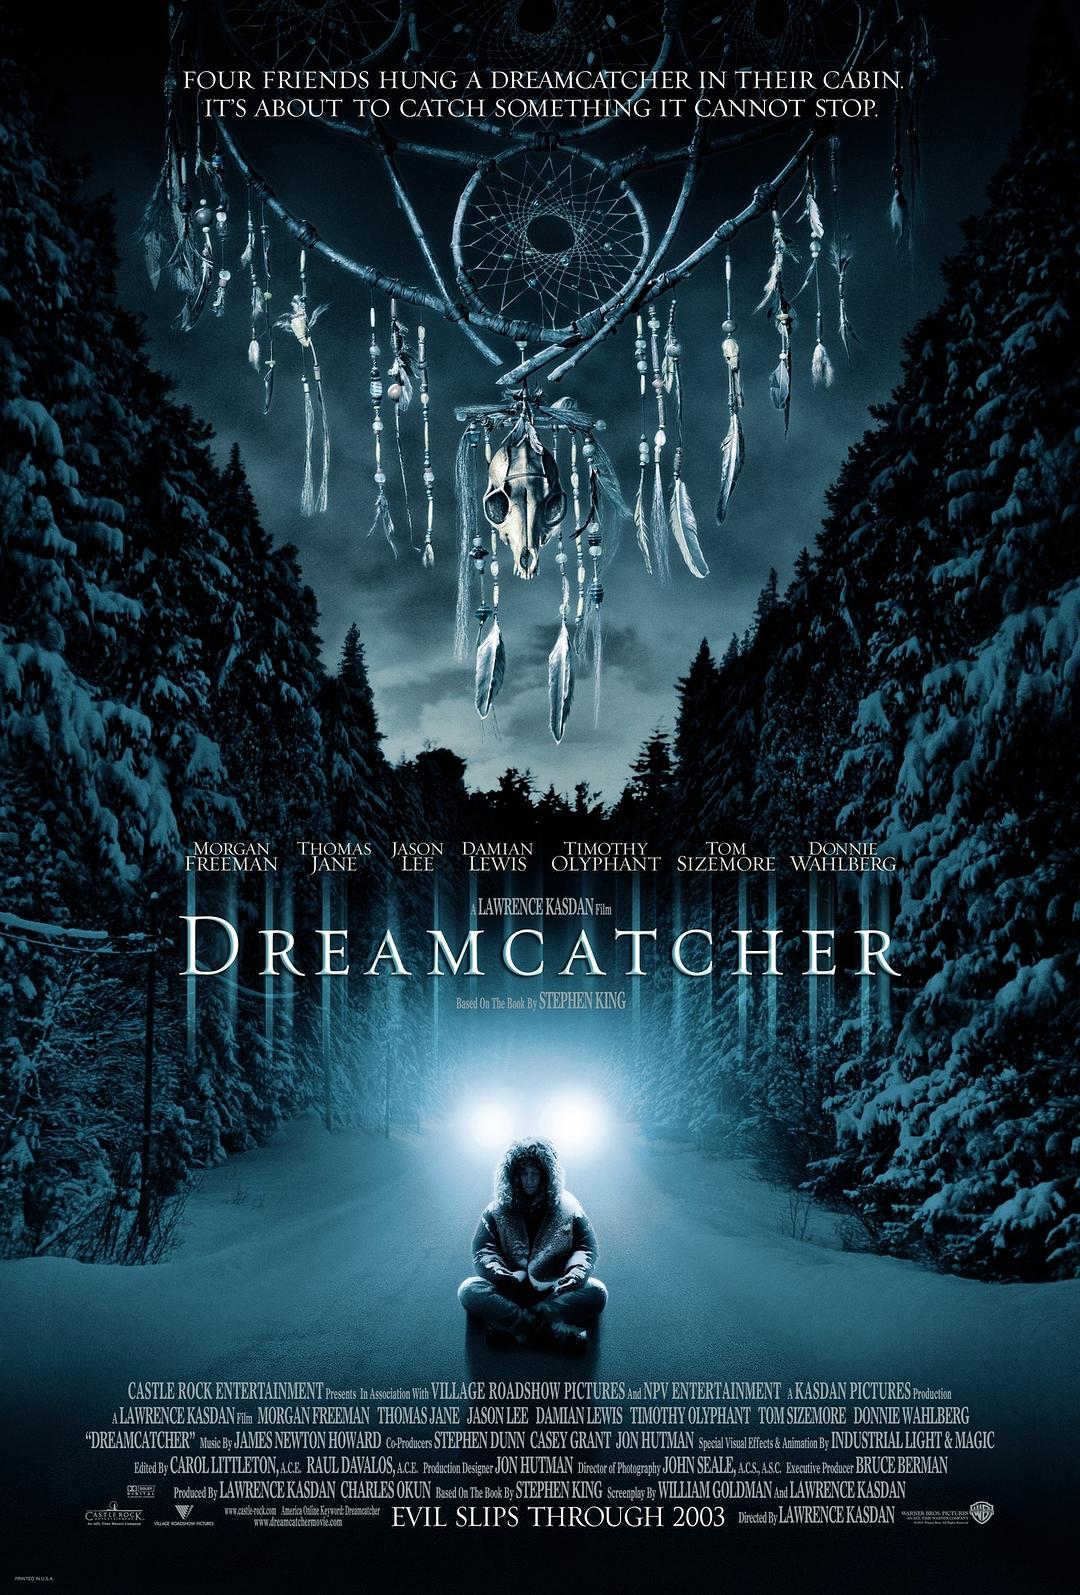 捕梦网.Dreamcatcher.2003.1080p.BluRay.Remux.DTS-HD.5.1@ 21.57GB